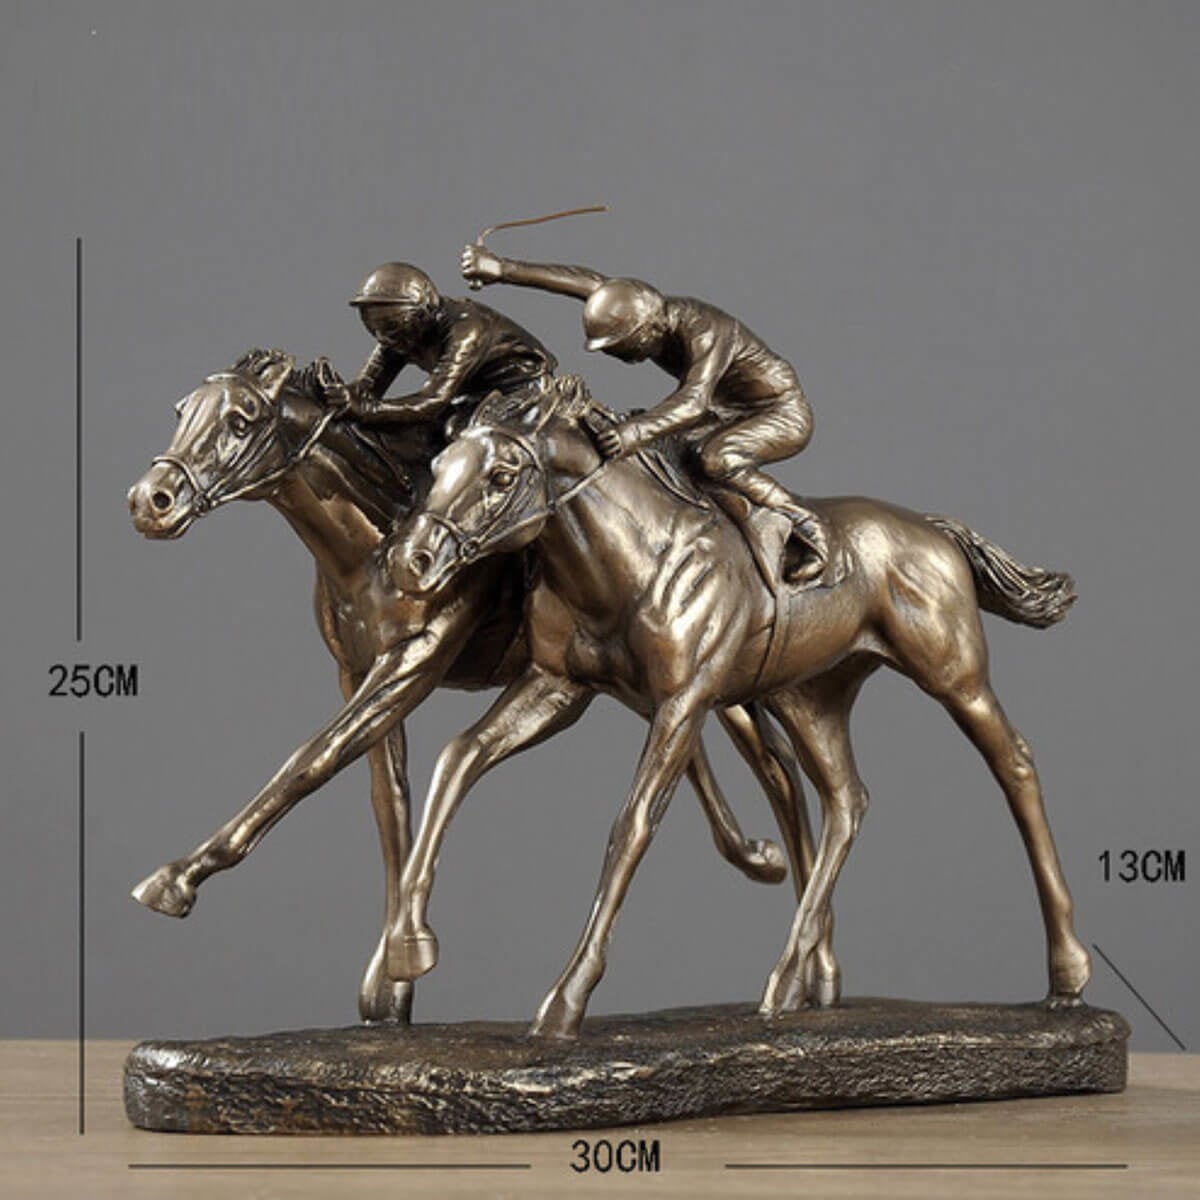 Escultura de metal de atleta ecuestre de carreras de caballos – The Mob Wife